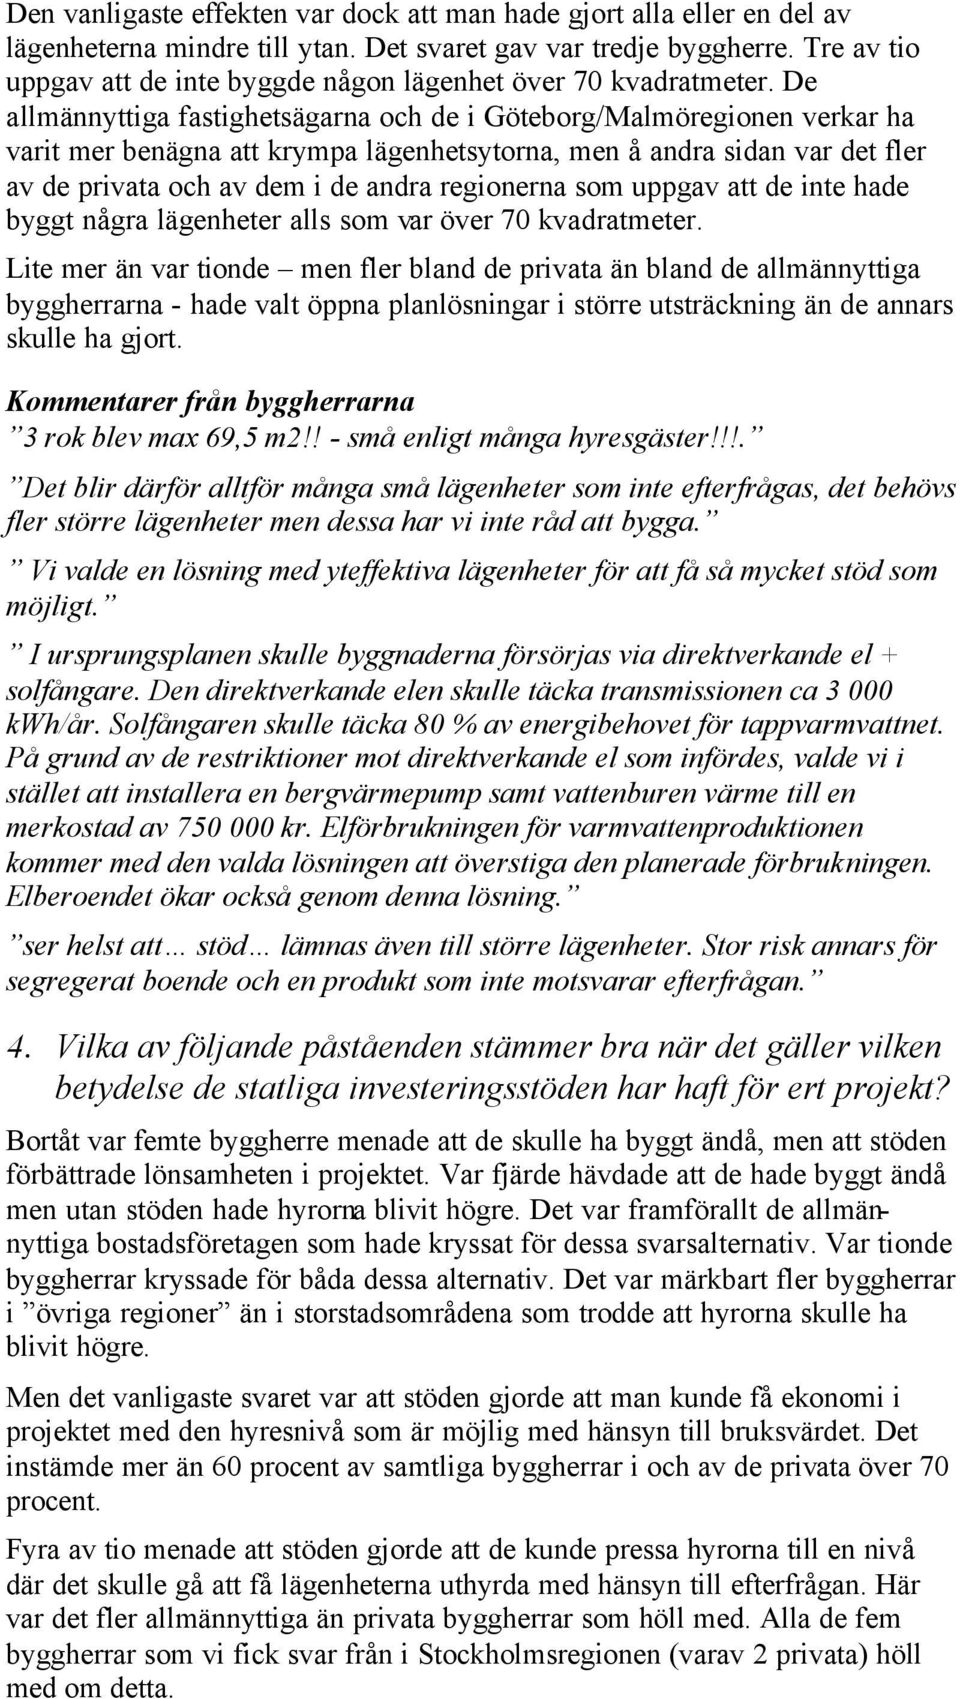 De allmännyttiga fastighetsägarna och de i Göteborg/Malmöregionen verkar ha varit mer benägna att krympa lägenhetsytorna, men å andra sidan var det fler av de privata och av dem i de andra regionerna